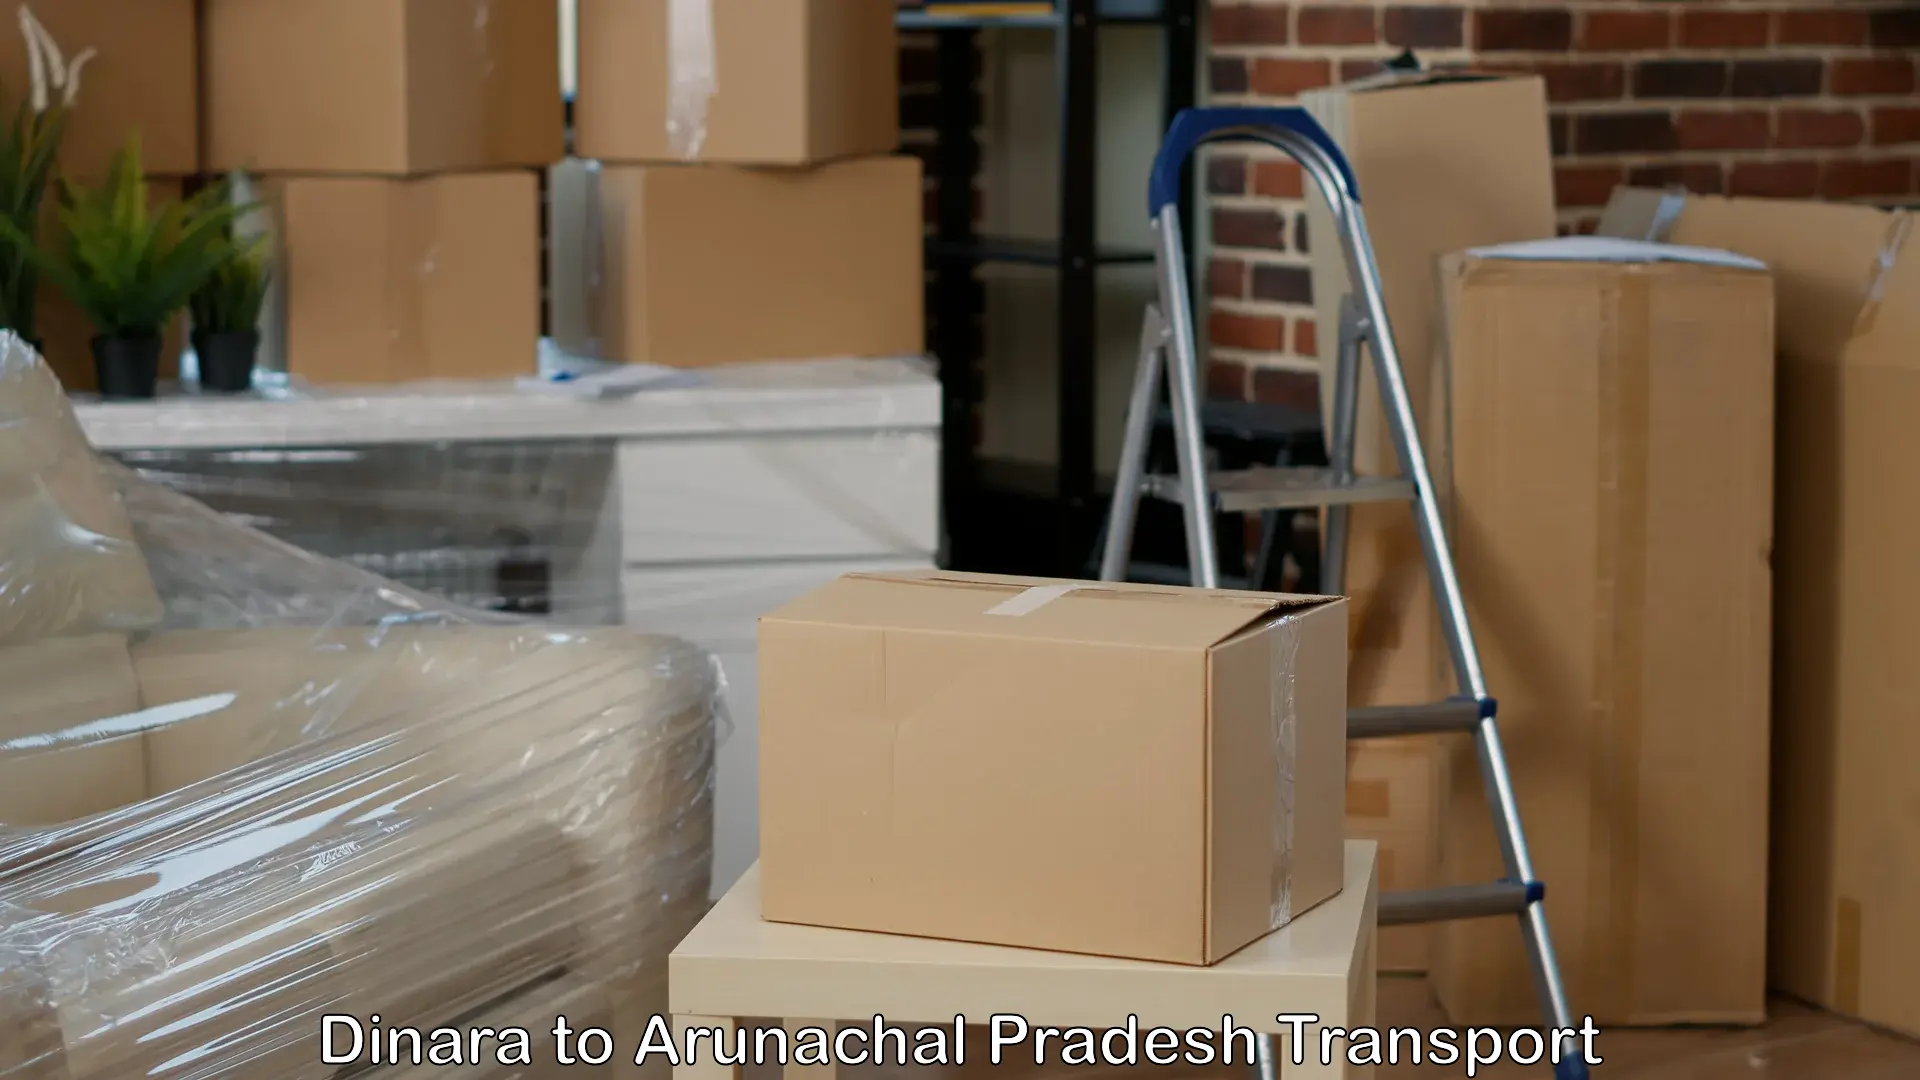 Daily parcel service transport Dinara to Basar